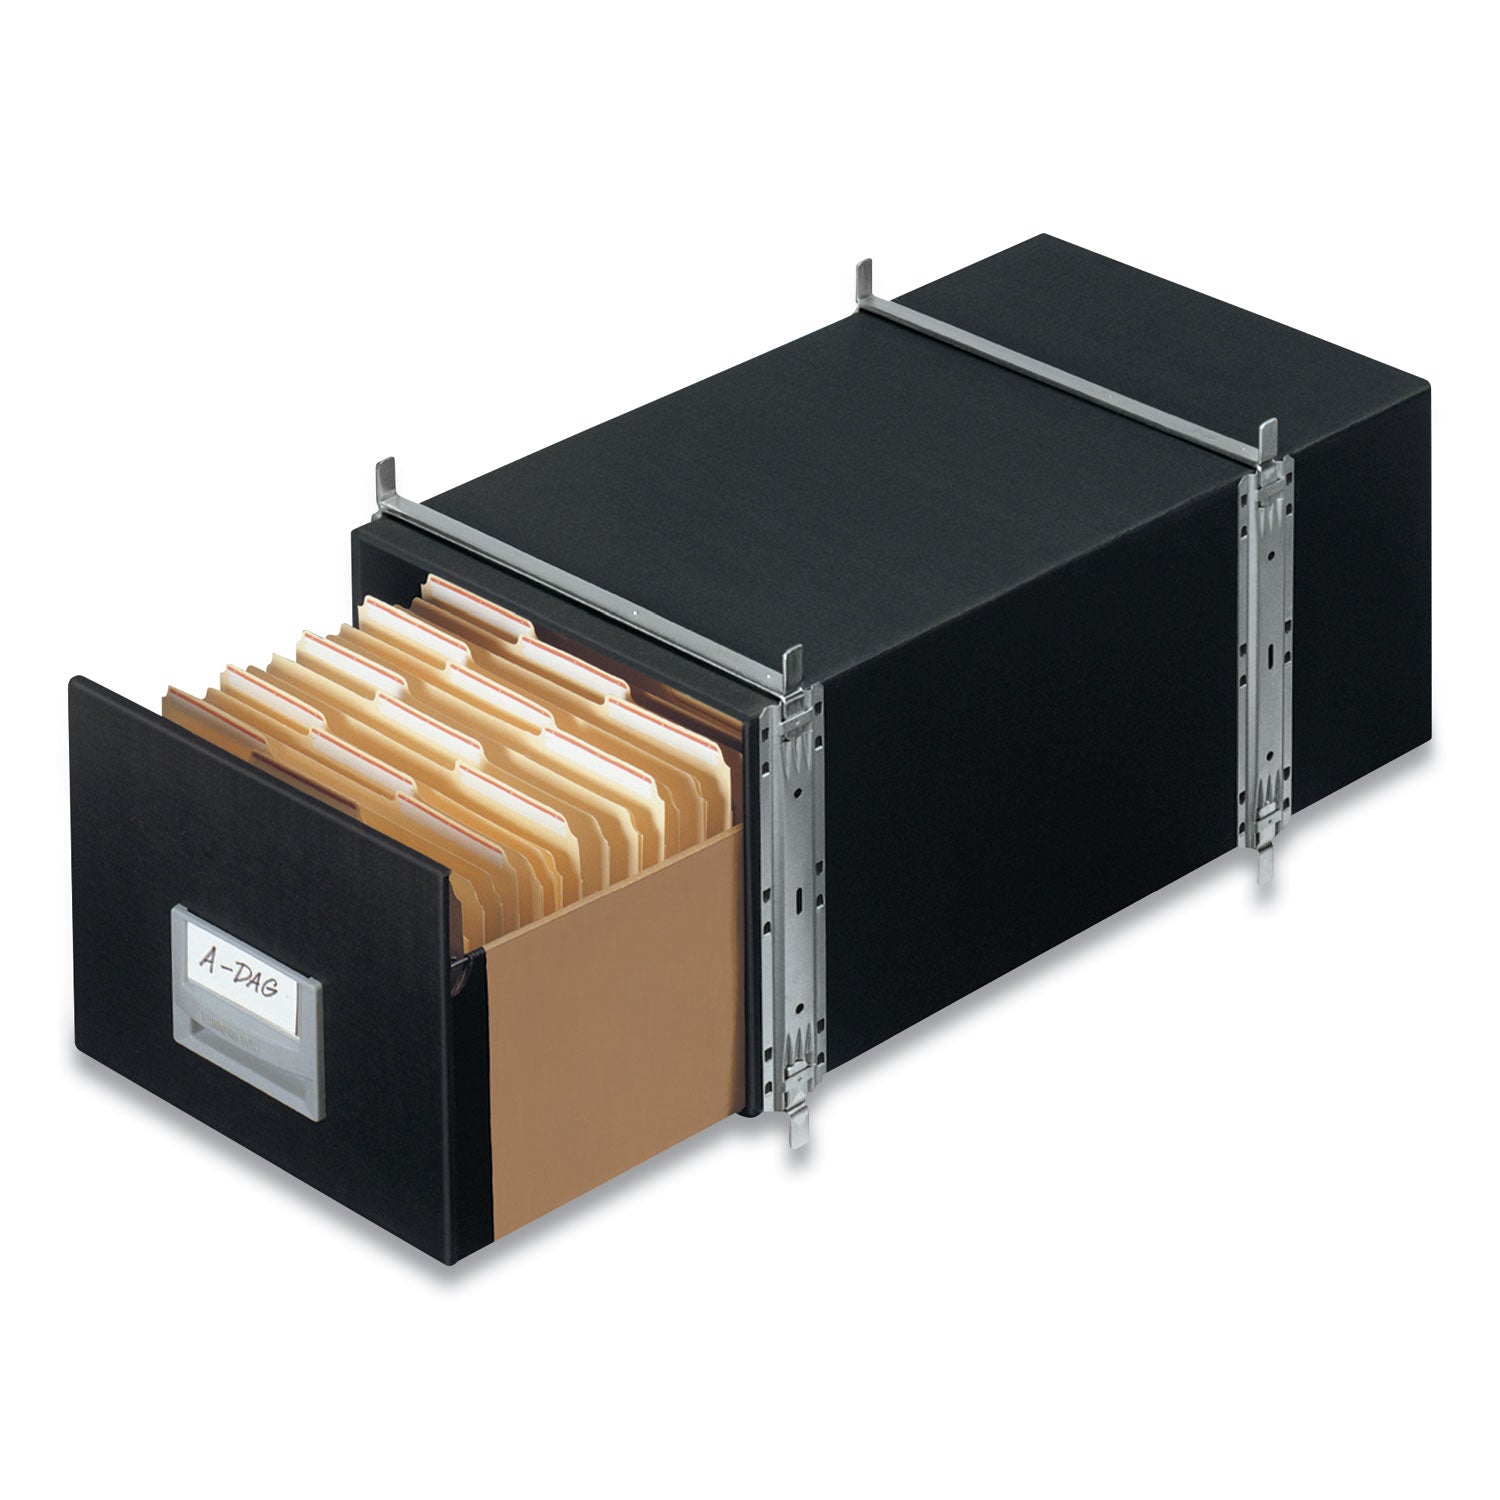 STAXONSTEEL Maximum Space-Saving Storage Drawers, Legal Files, 17" x 25.5" x 11.13", Black, 6/Carton - 